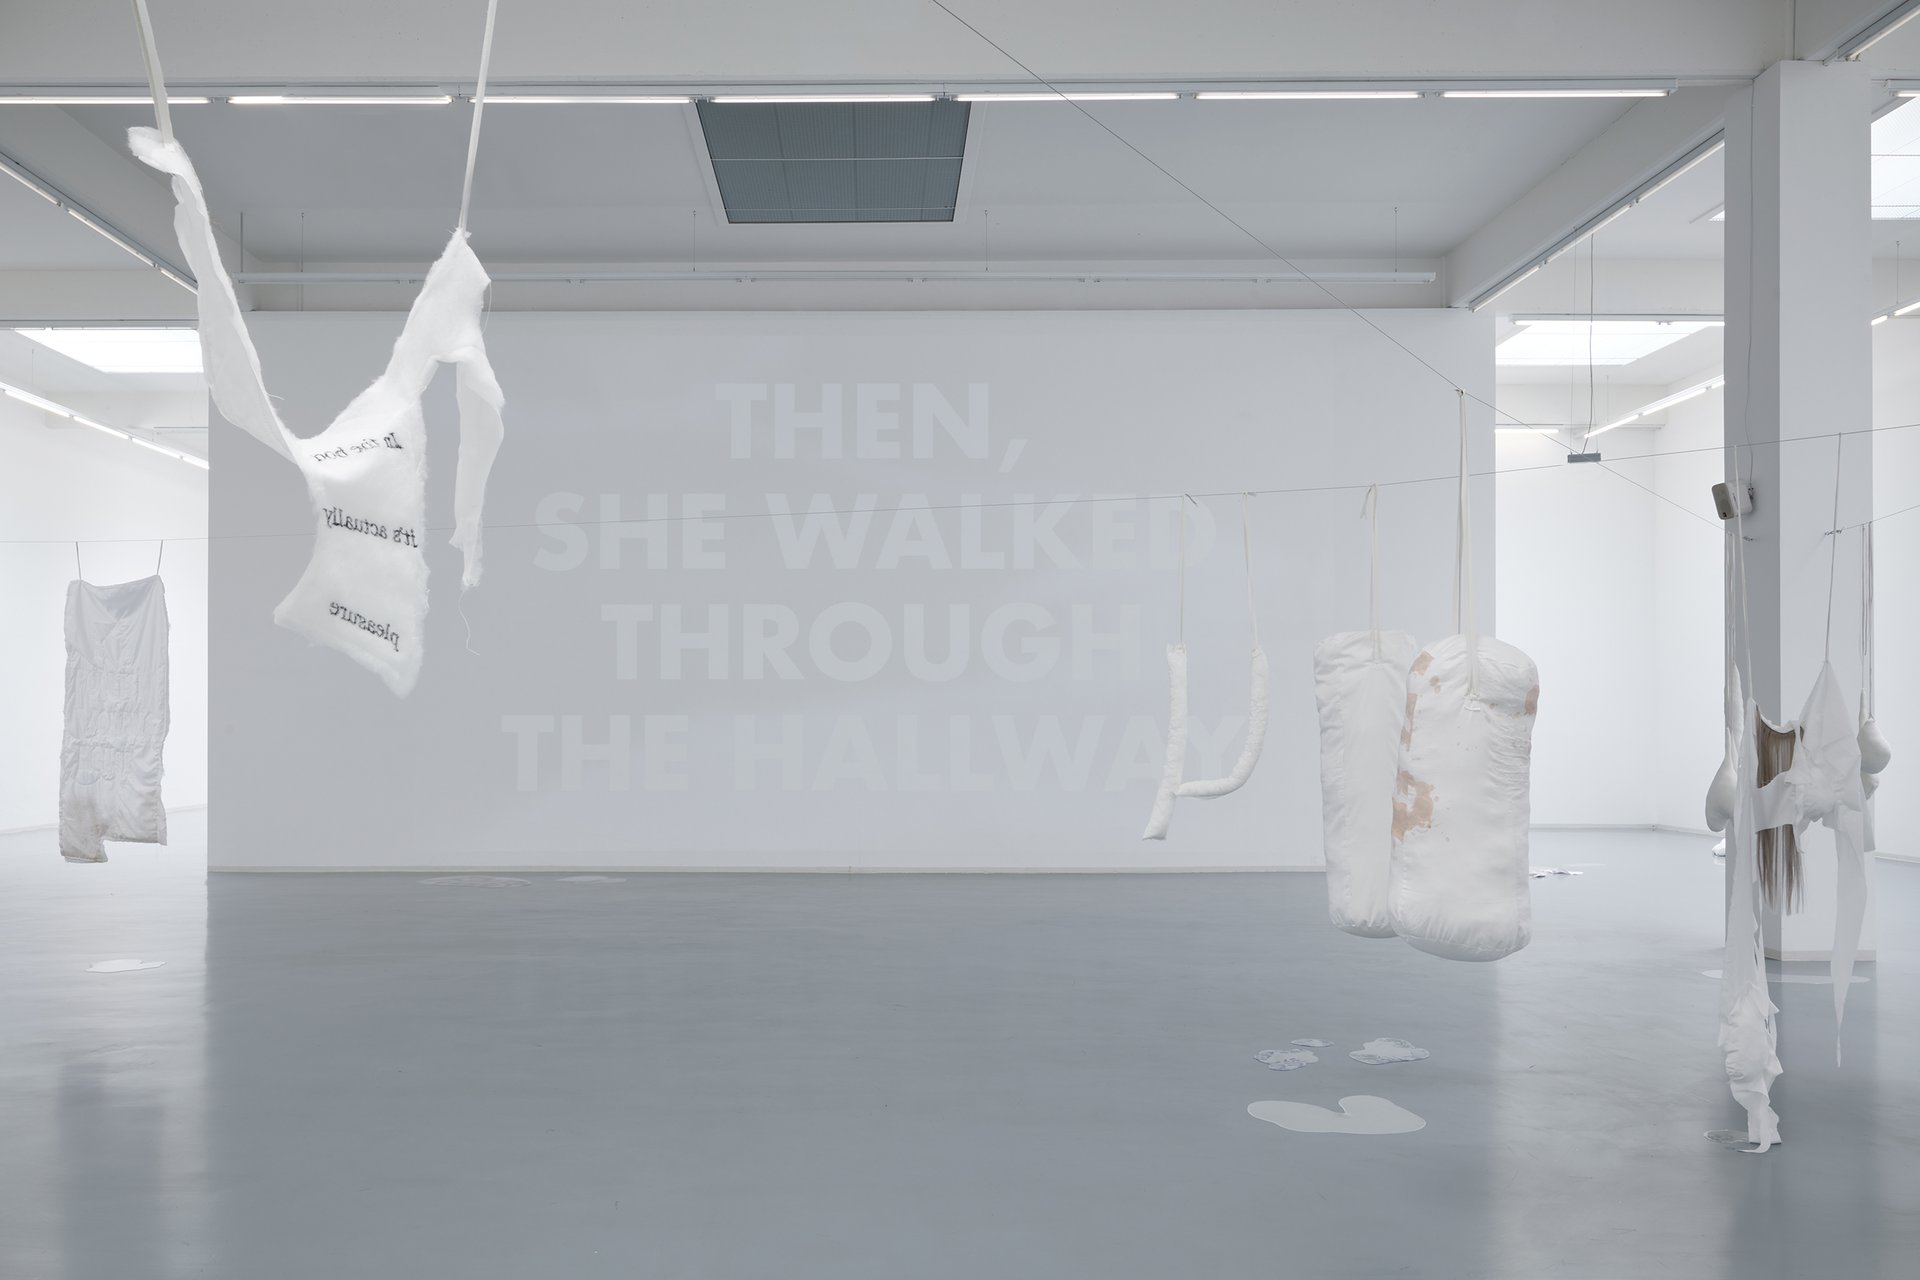 Franca Scholz, Installationsansicht, 2020, Bonner Kunstverein, Courtesy die Künstlerin. Foto: Mareike Tocha